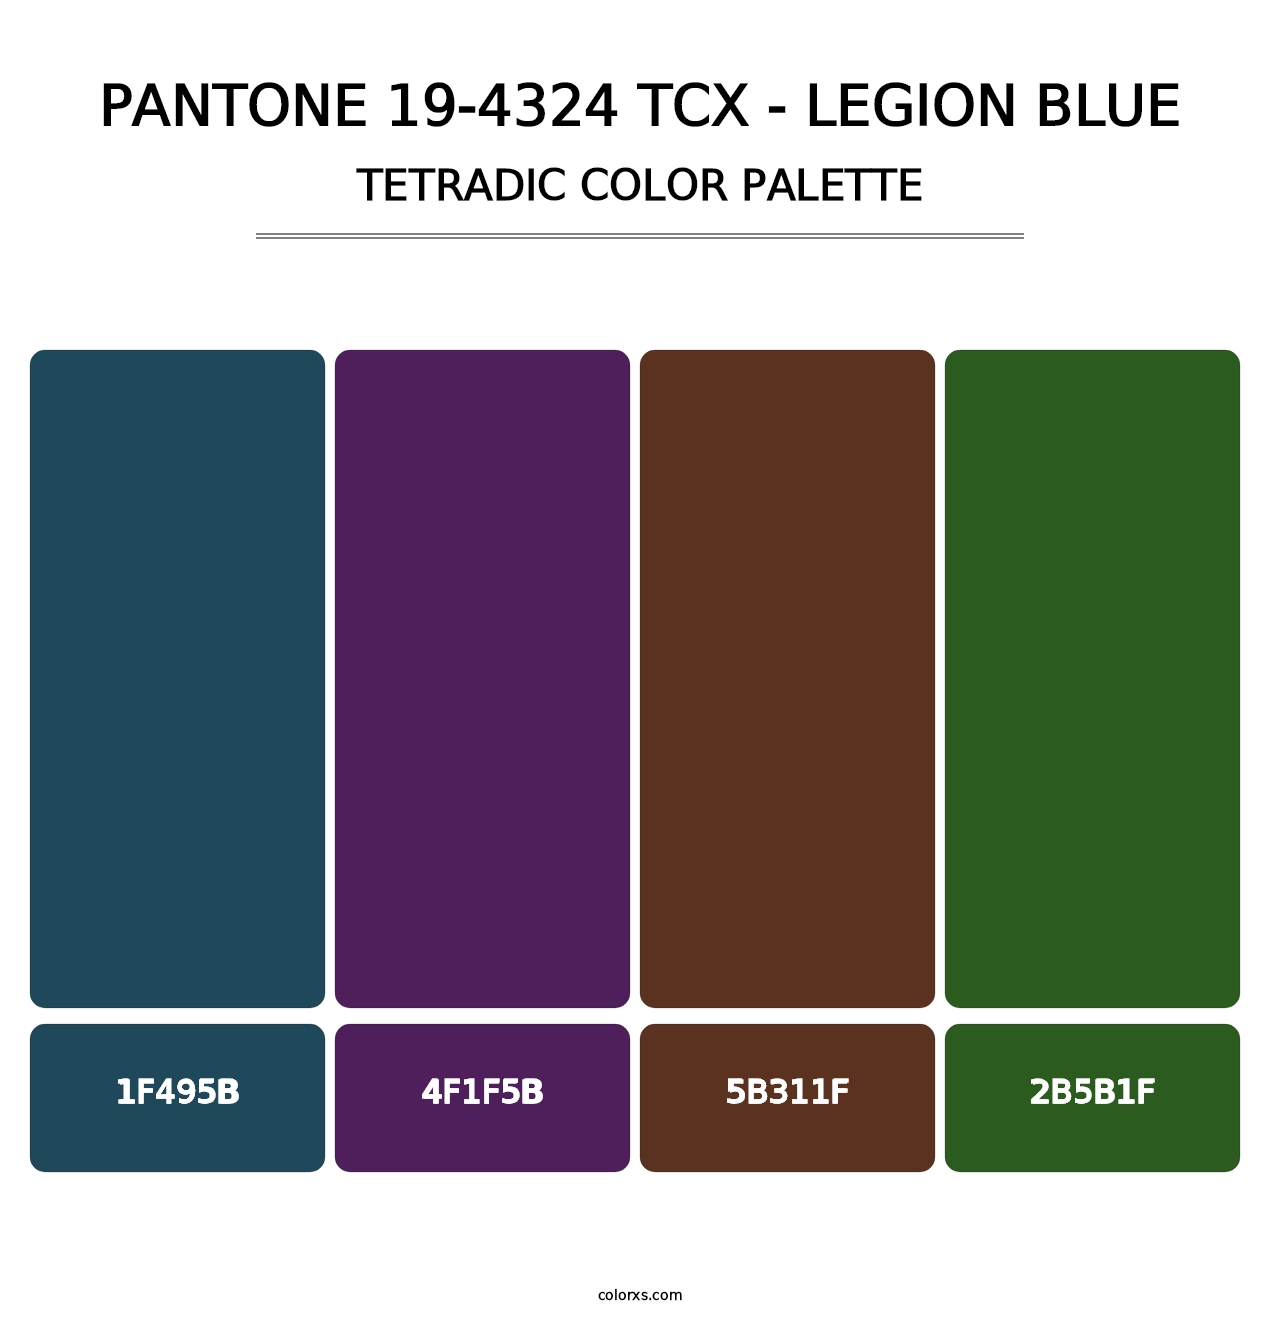 PANTONE 19-4324 TCX - Legion Blue - Tetradic Color Palette